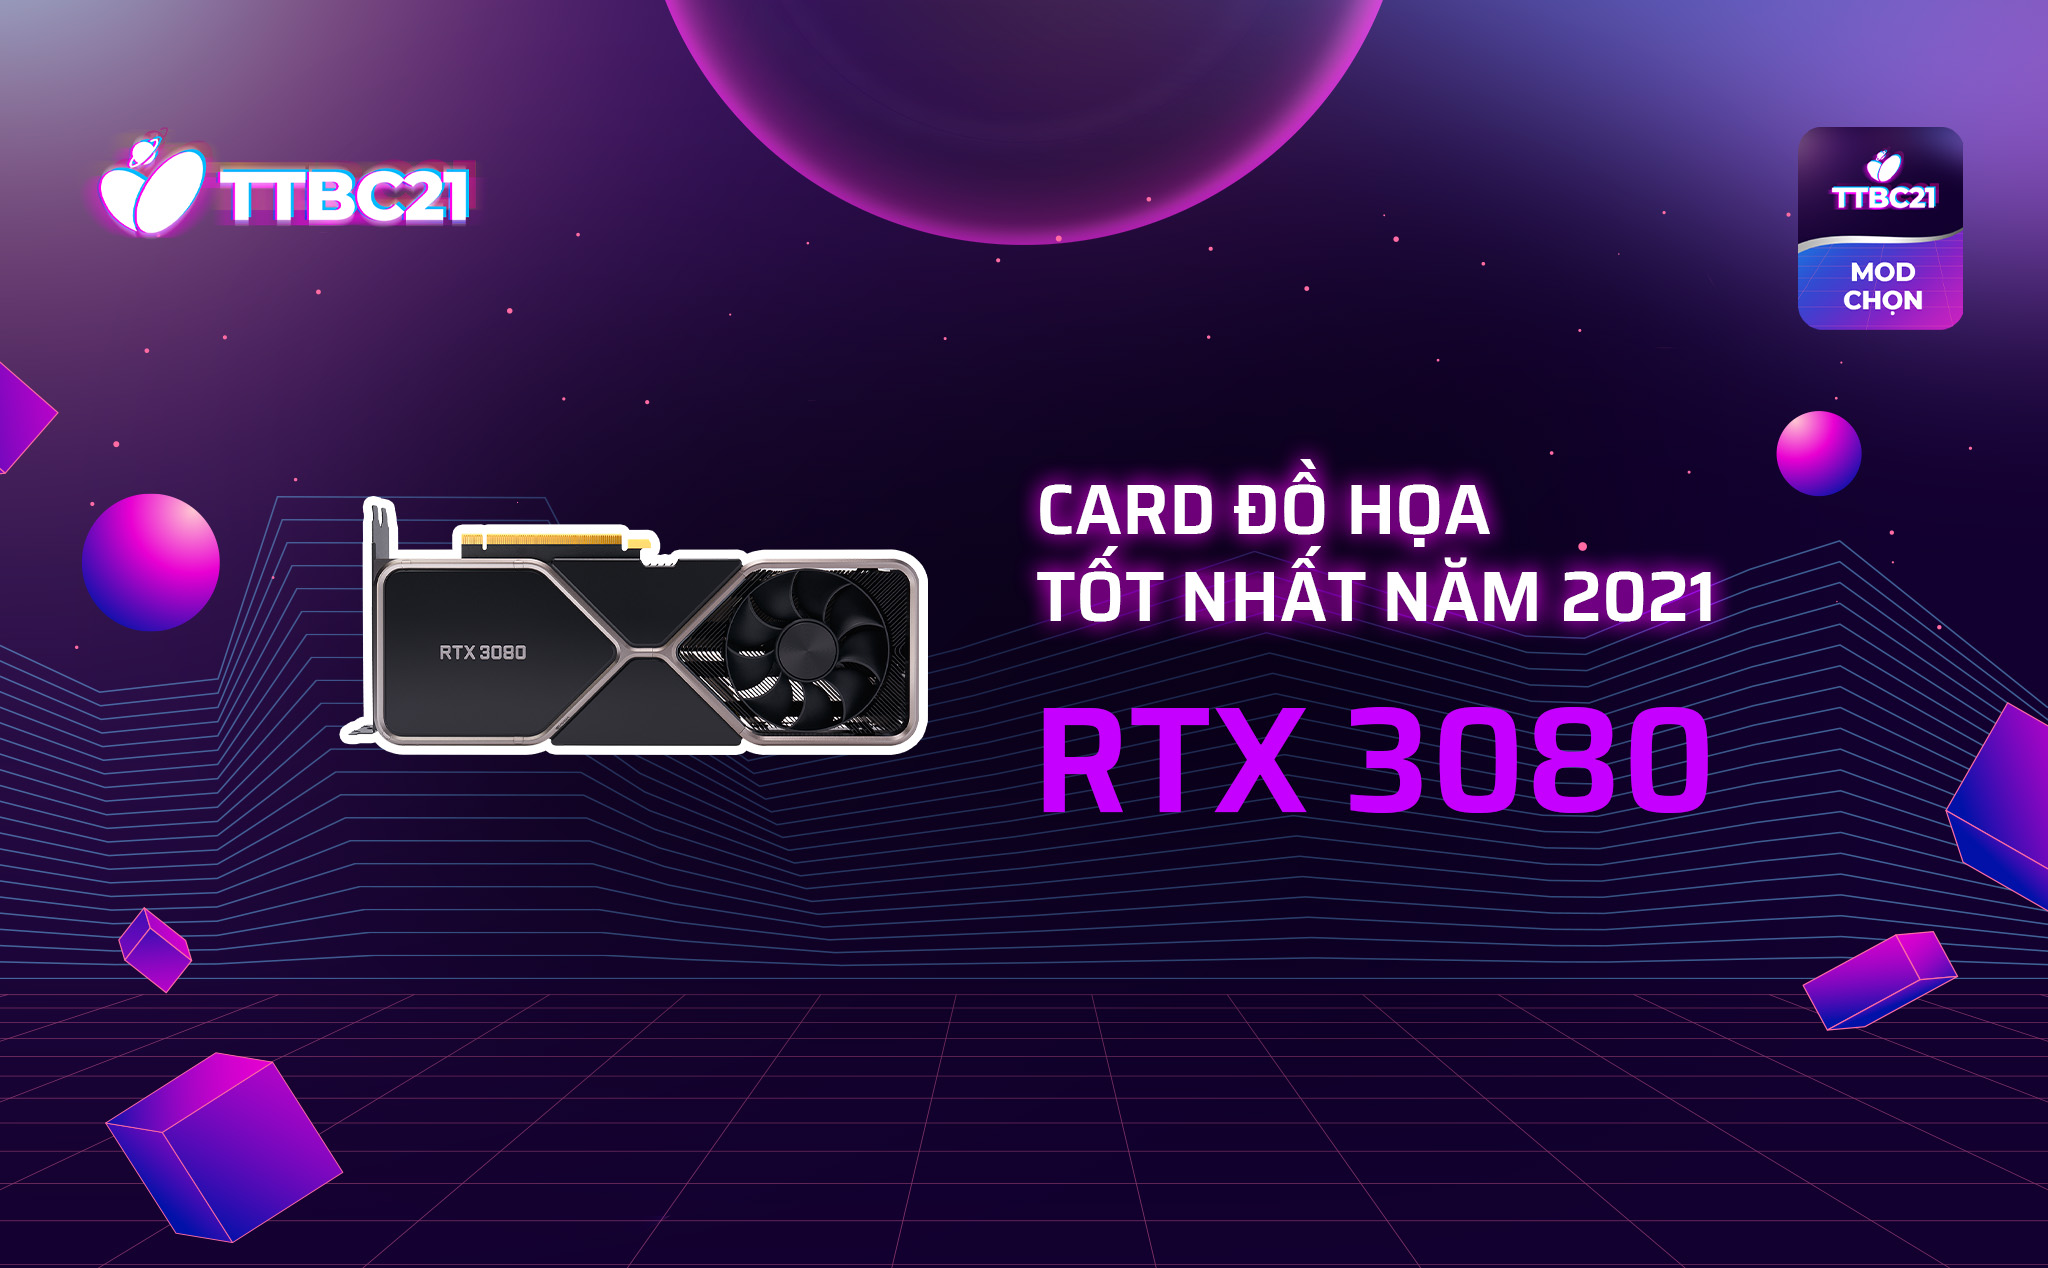 #TTBC21 – Mod Choice: RTX 3080, card đồ họa tốt nhất năm 2021